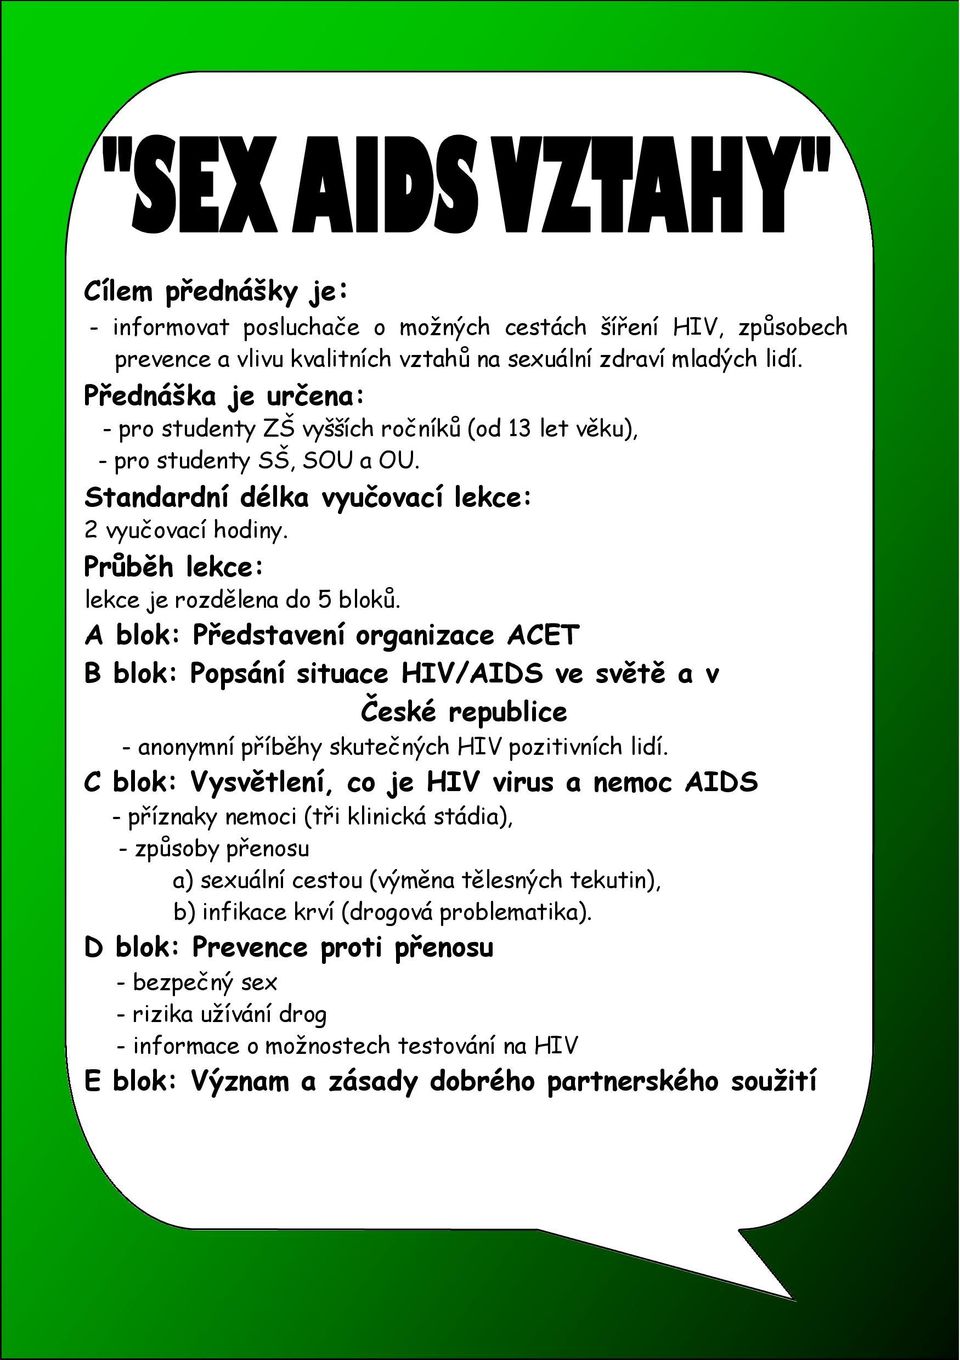 A blok: Představení organizace ACET B blok: Popsání situace HIV/AIDS ve světě a v České republice - anonymní příběhy skutečných HIV pozitivních lidí.